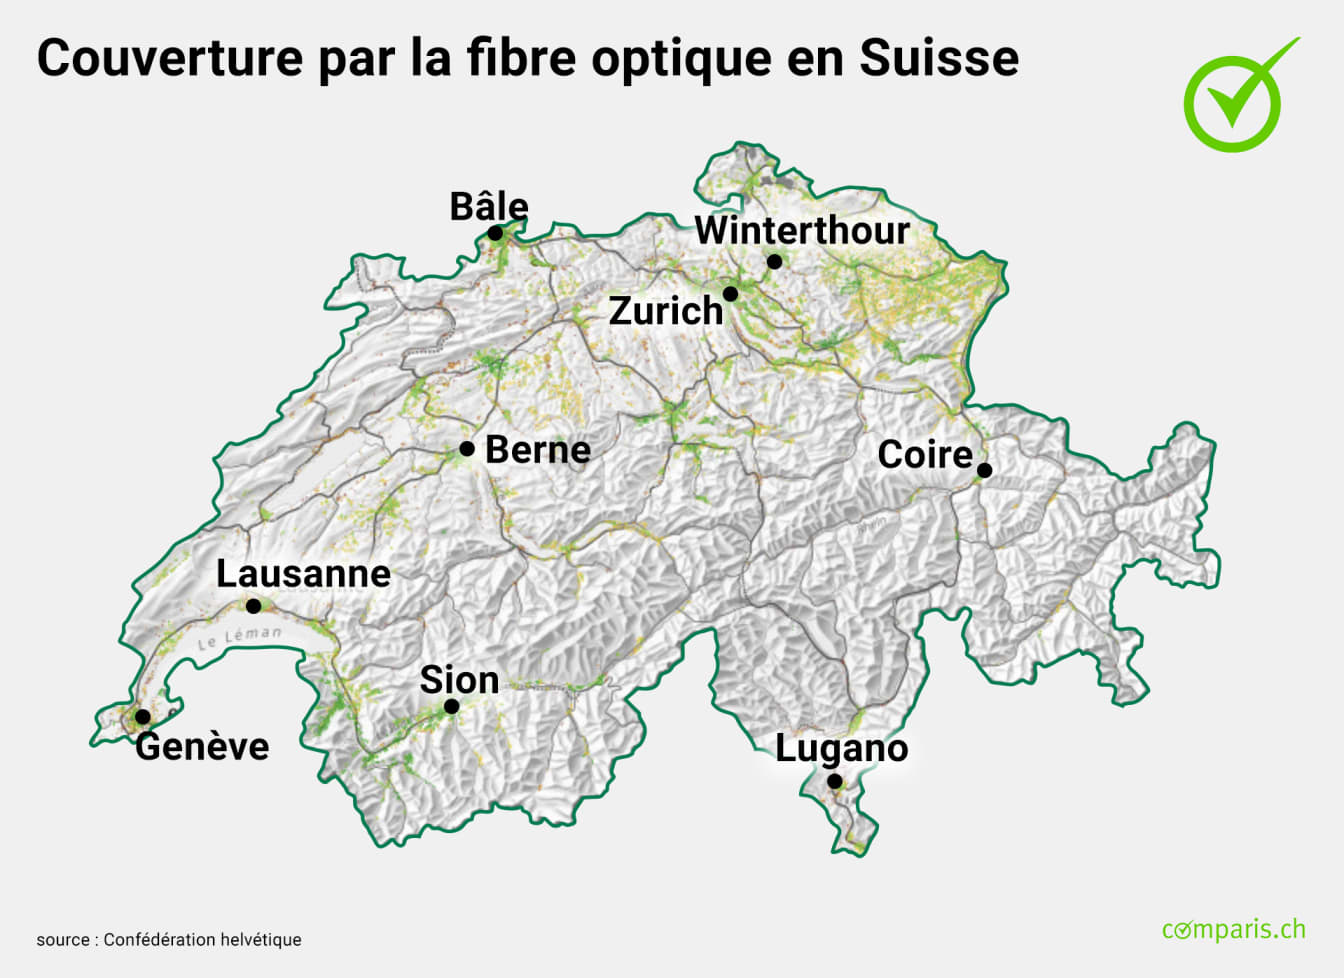 Une carte de la Suisse montrant la couverture par la fibre optique.